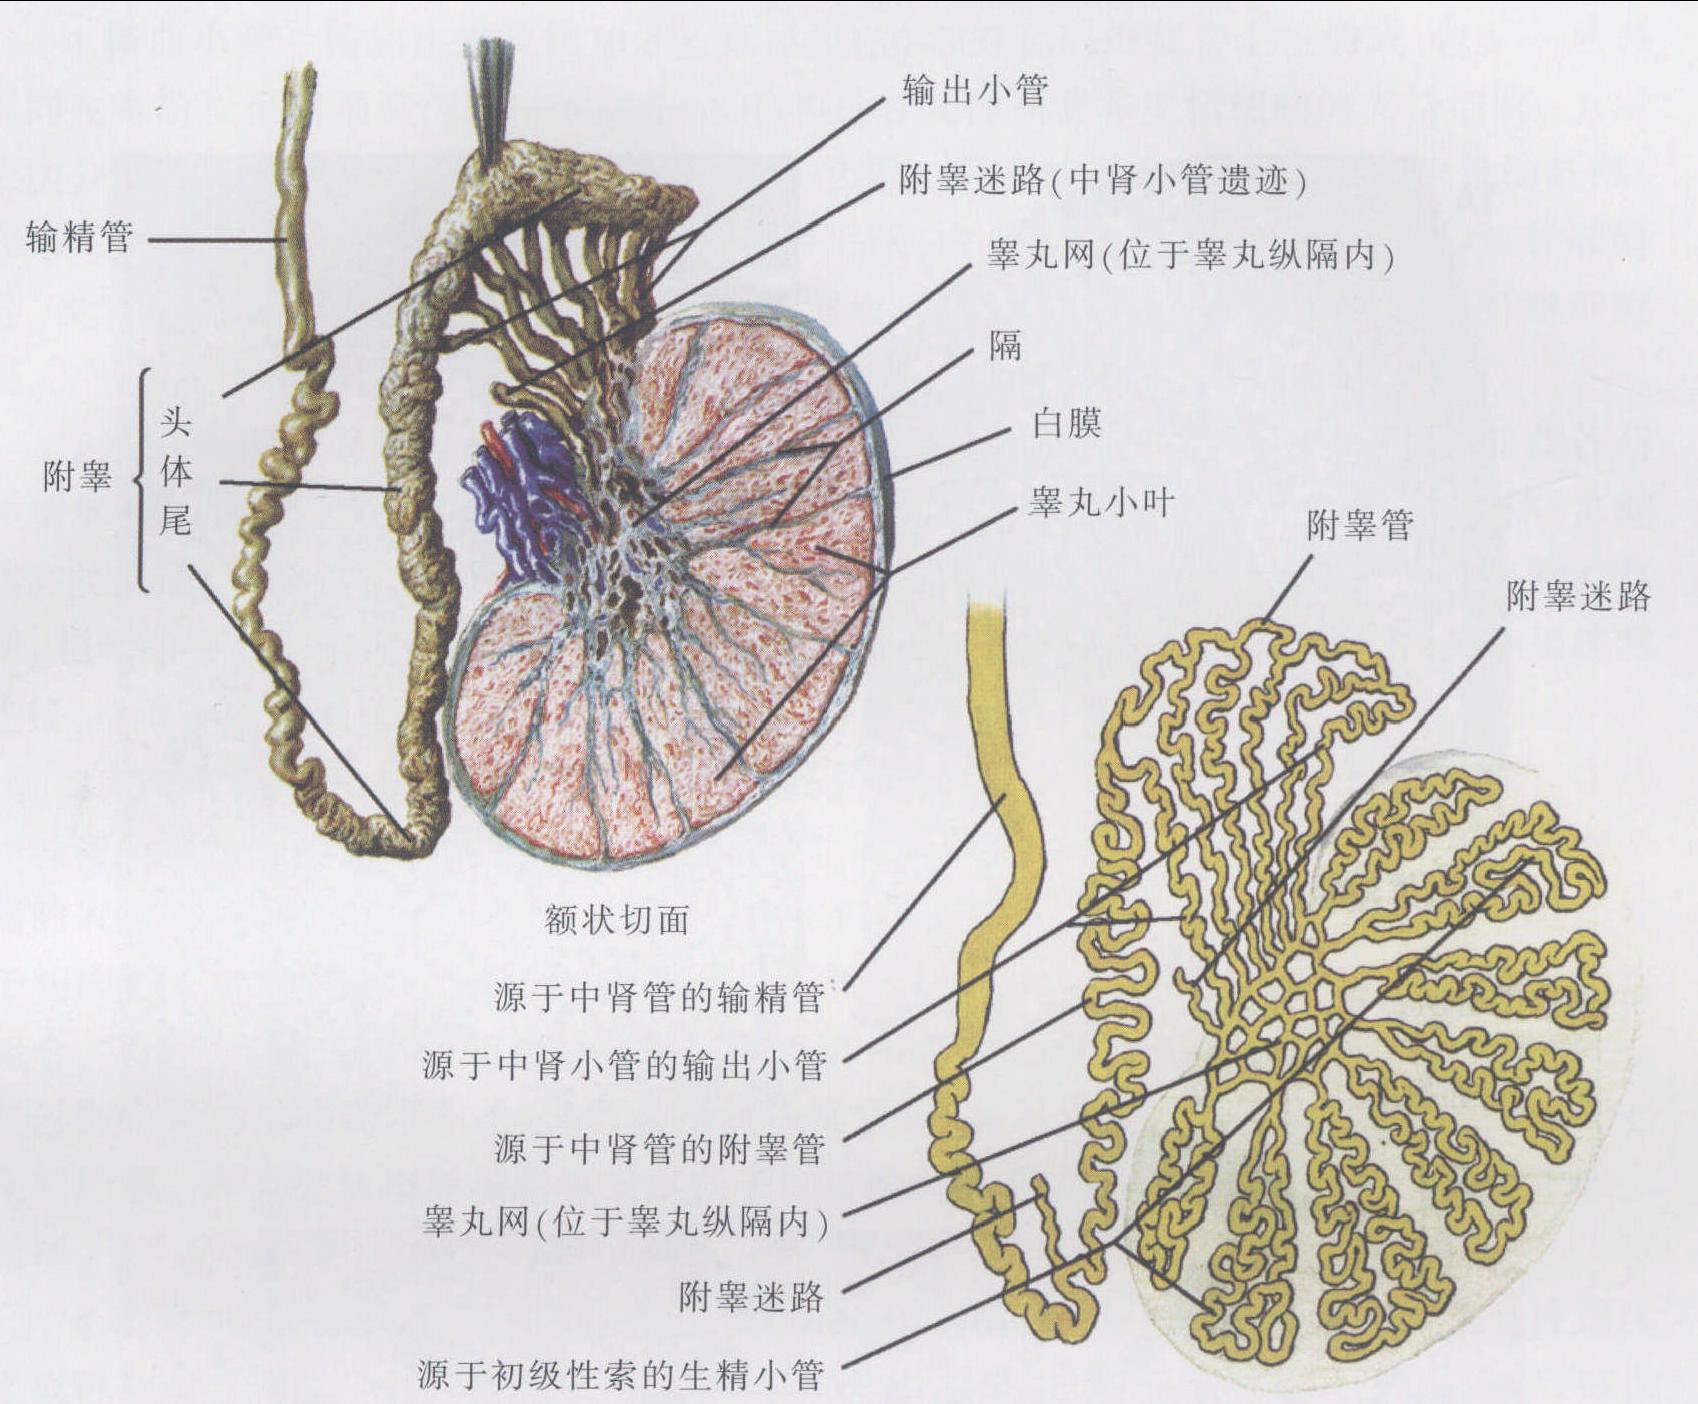 二、外生殖器-人体解剖学-医学